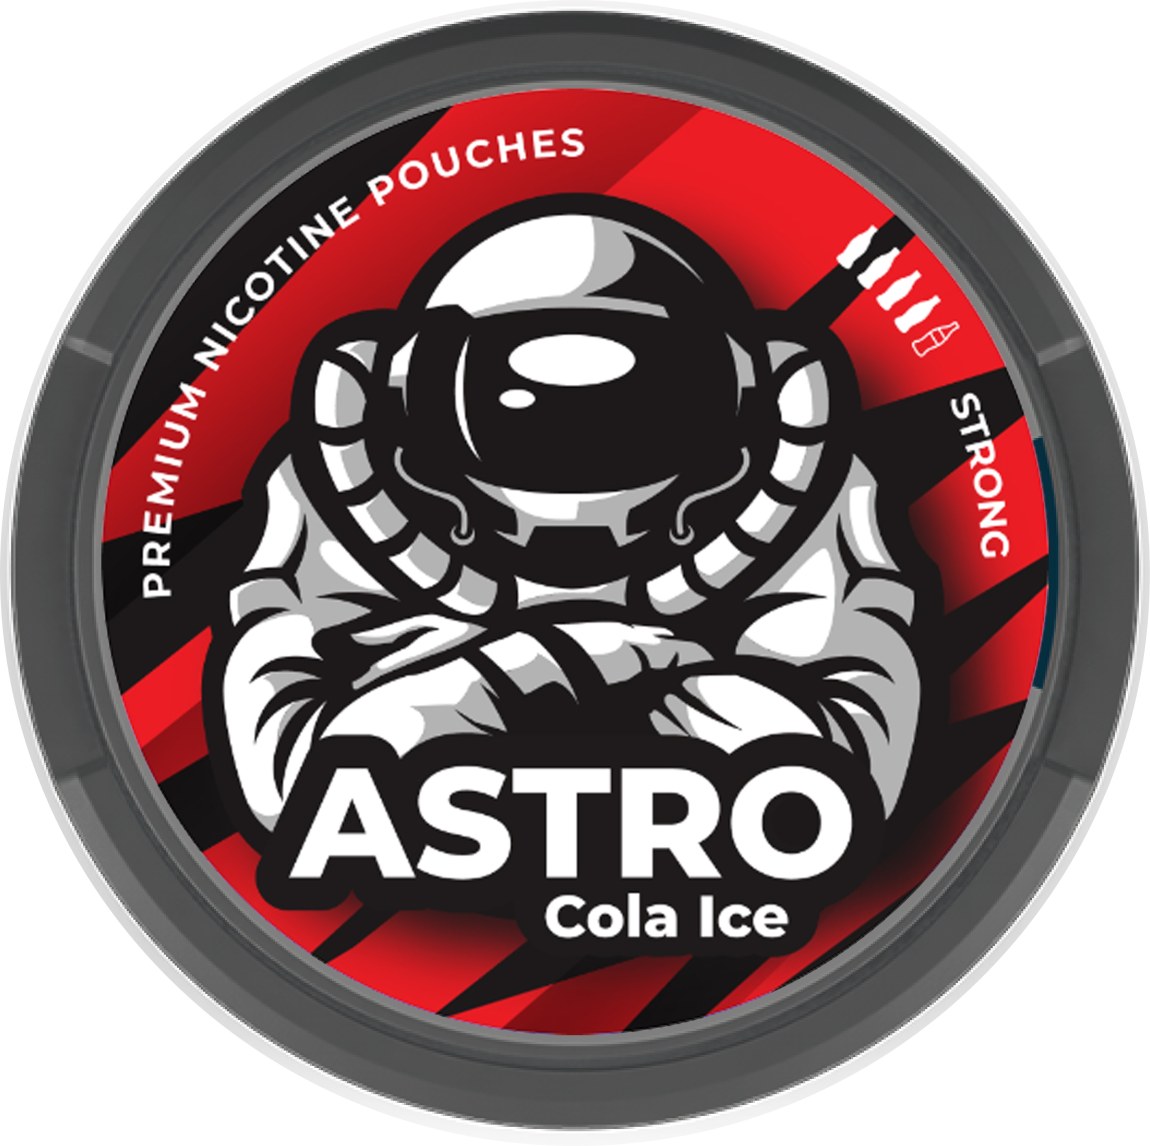 Astro Ice Cola